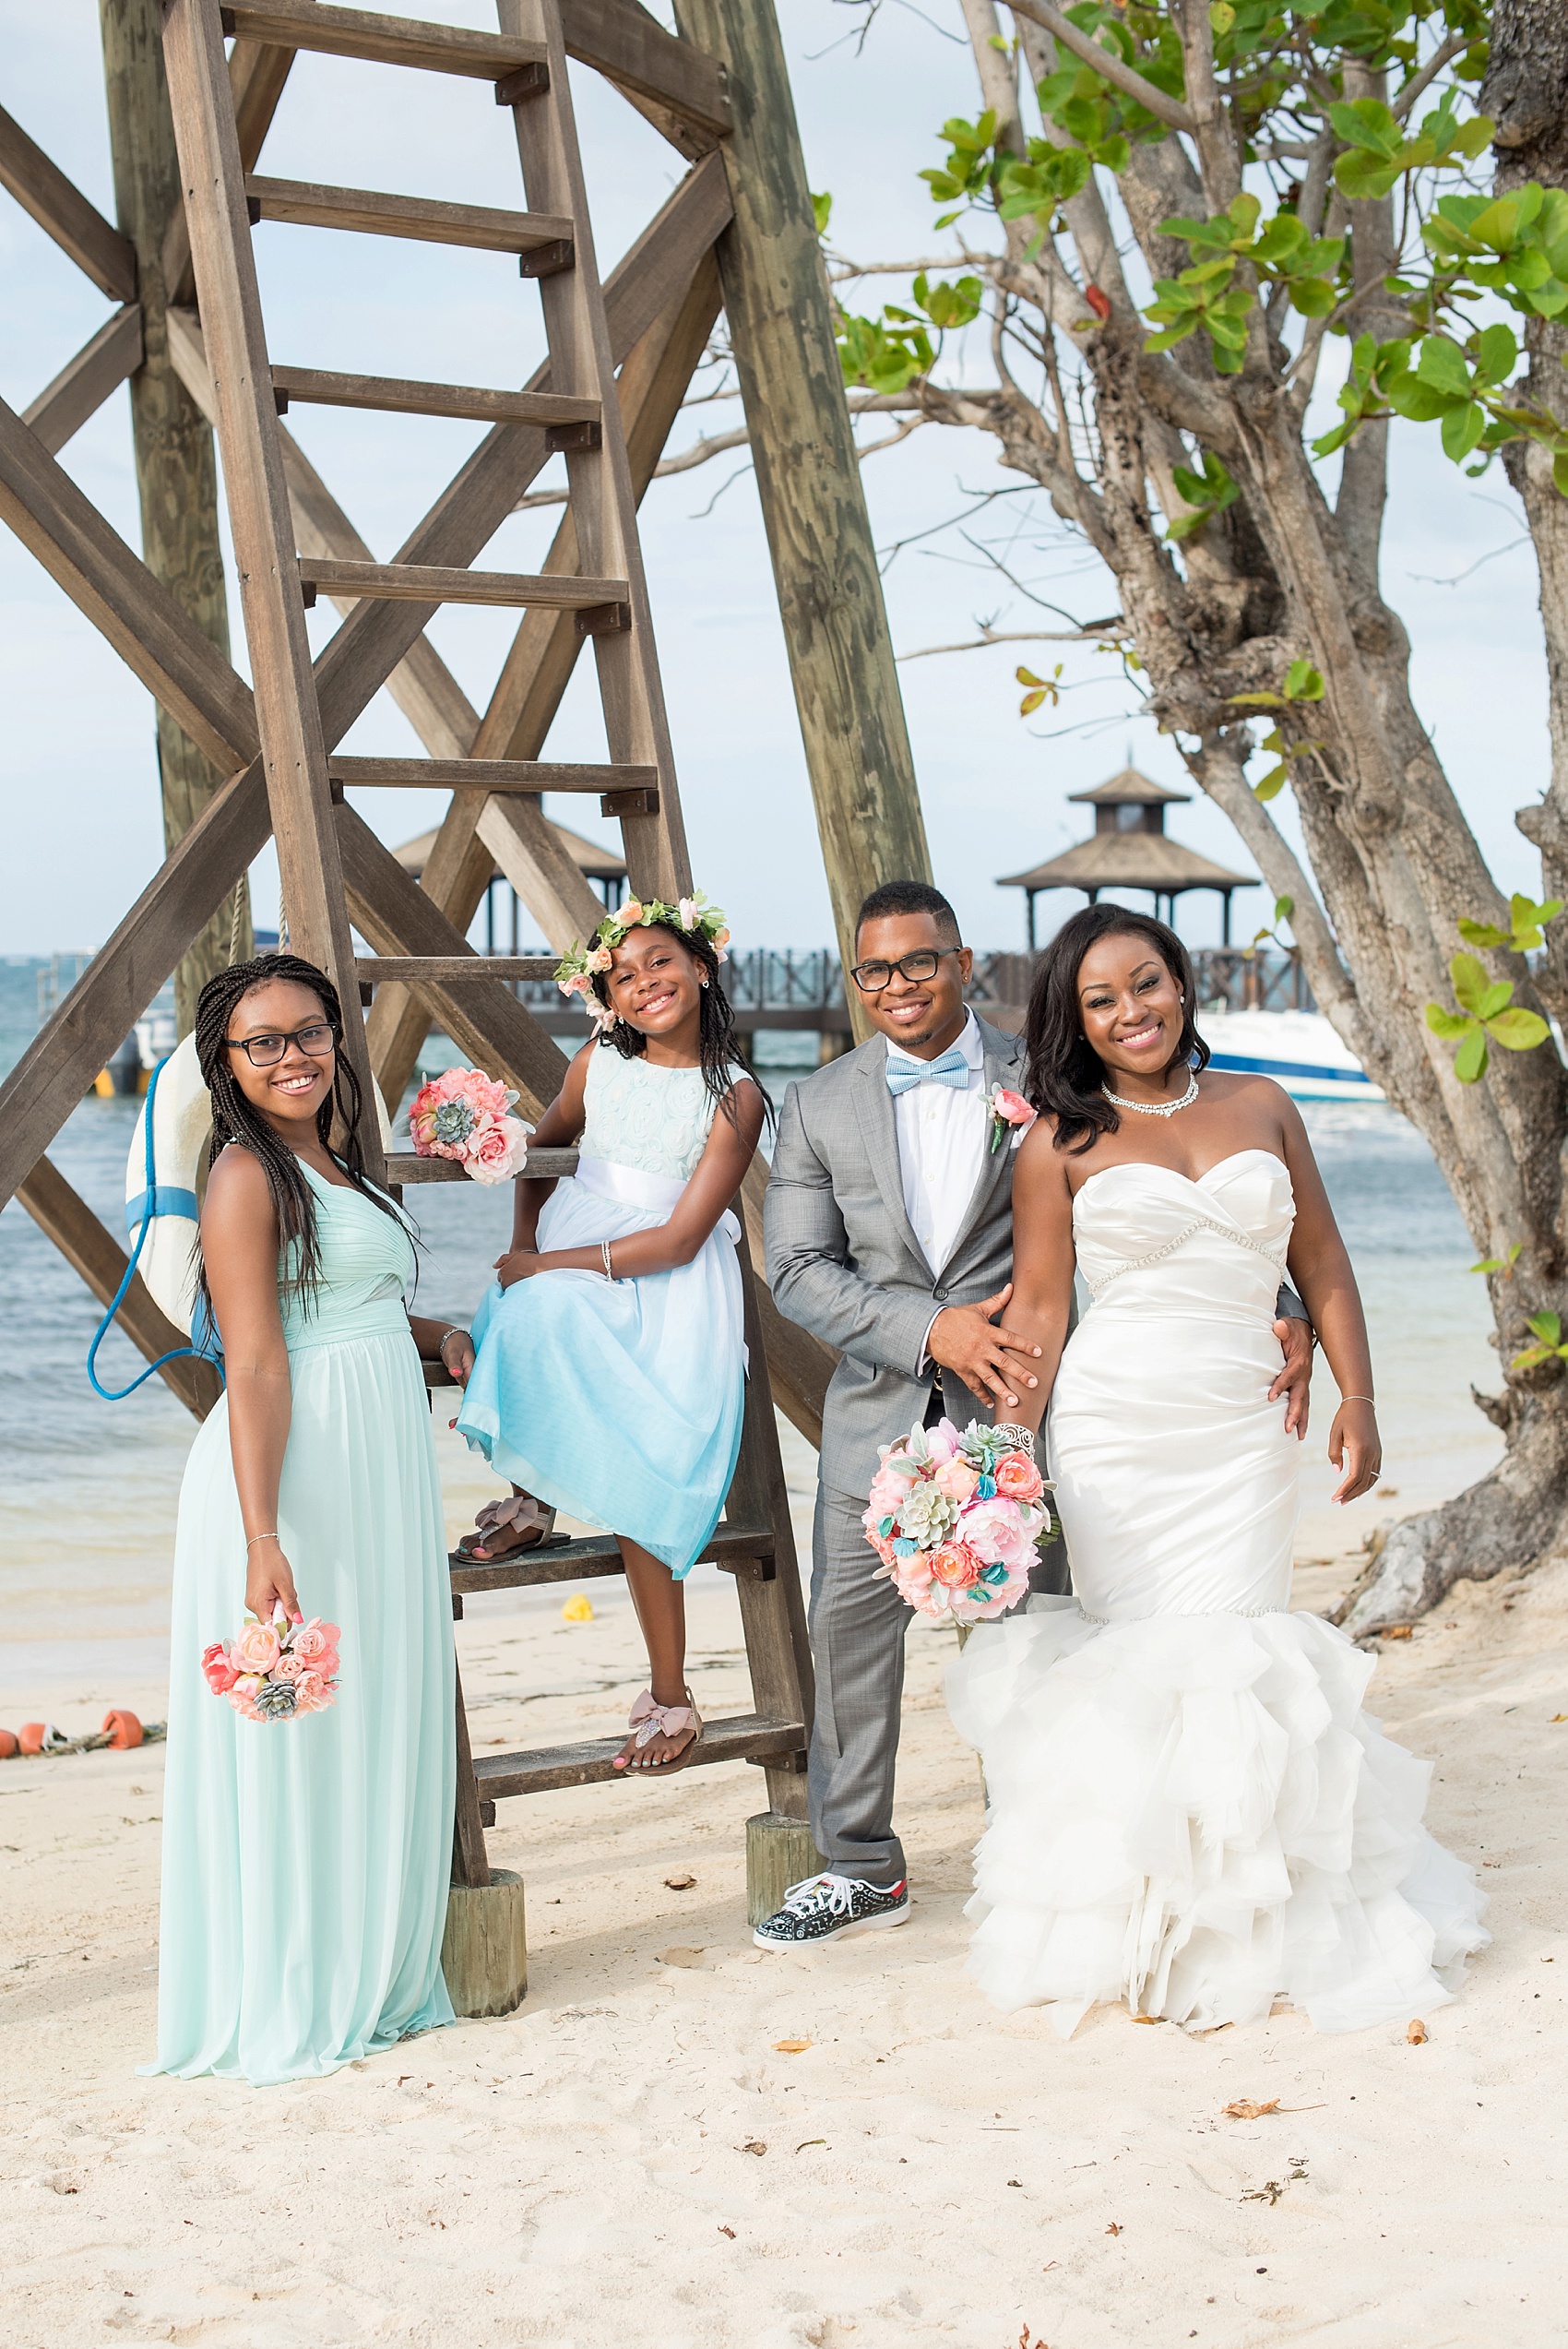 Iberostar Jamaica wedding photos, Montego Bay. Images by Mikkel Paige Photography.